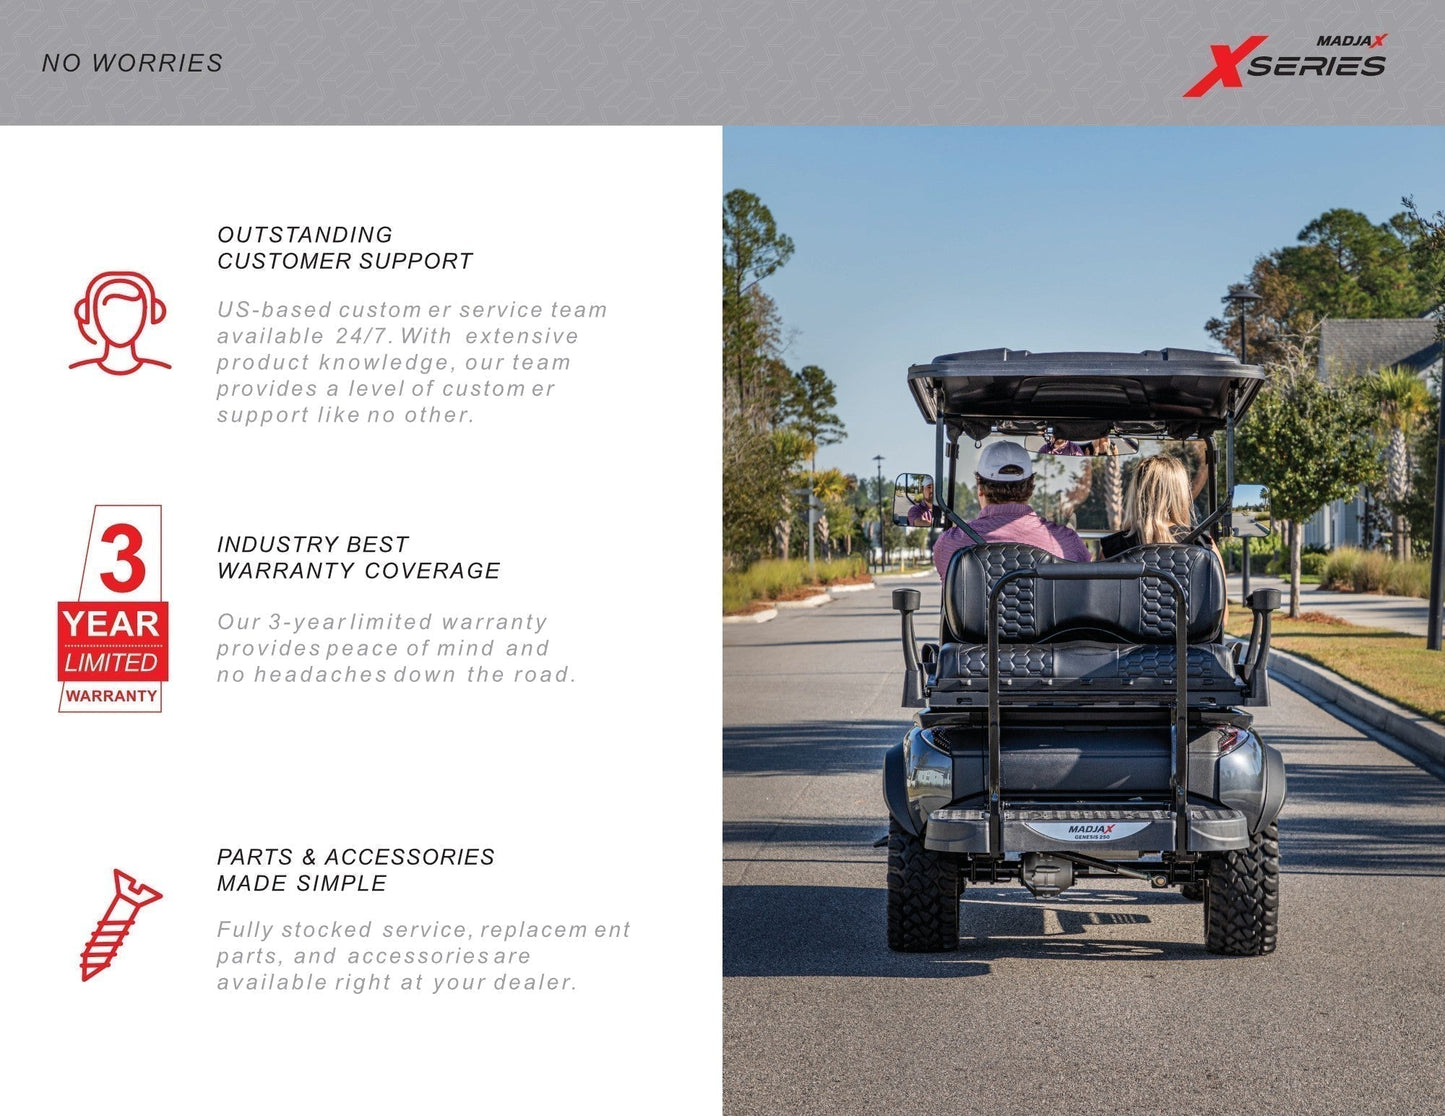 MADJAX X Series Storm Lifted 4 Passenger Golf Cart - Cherry Metallic #1085 *SOLD*